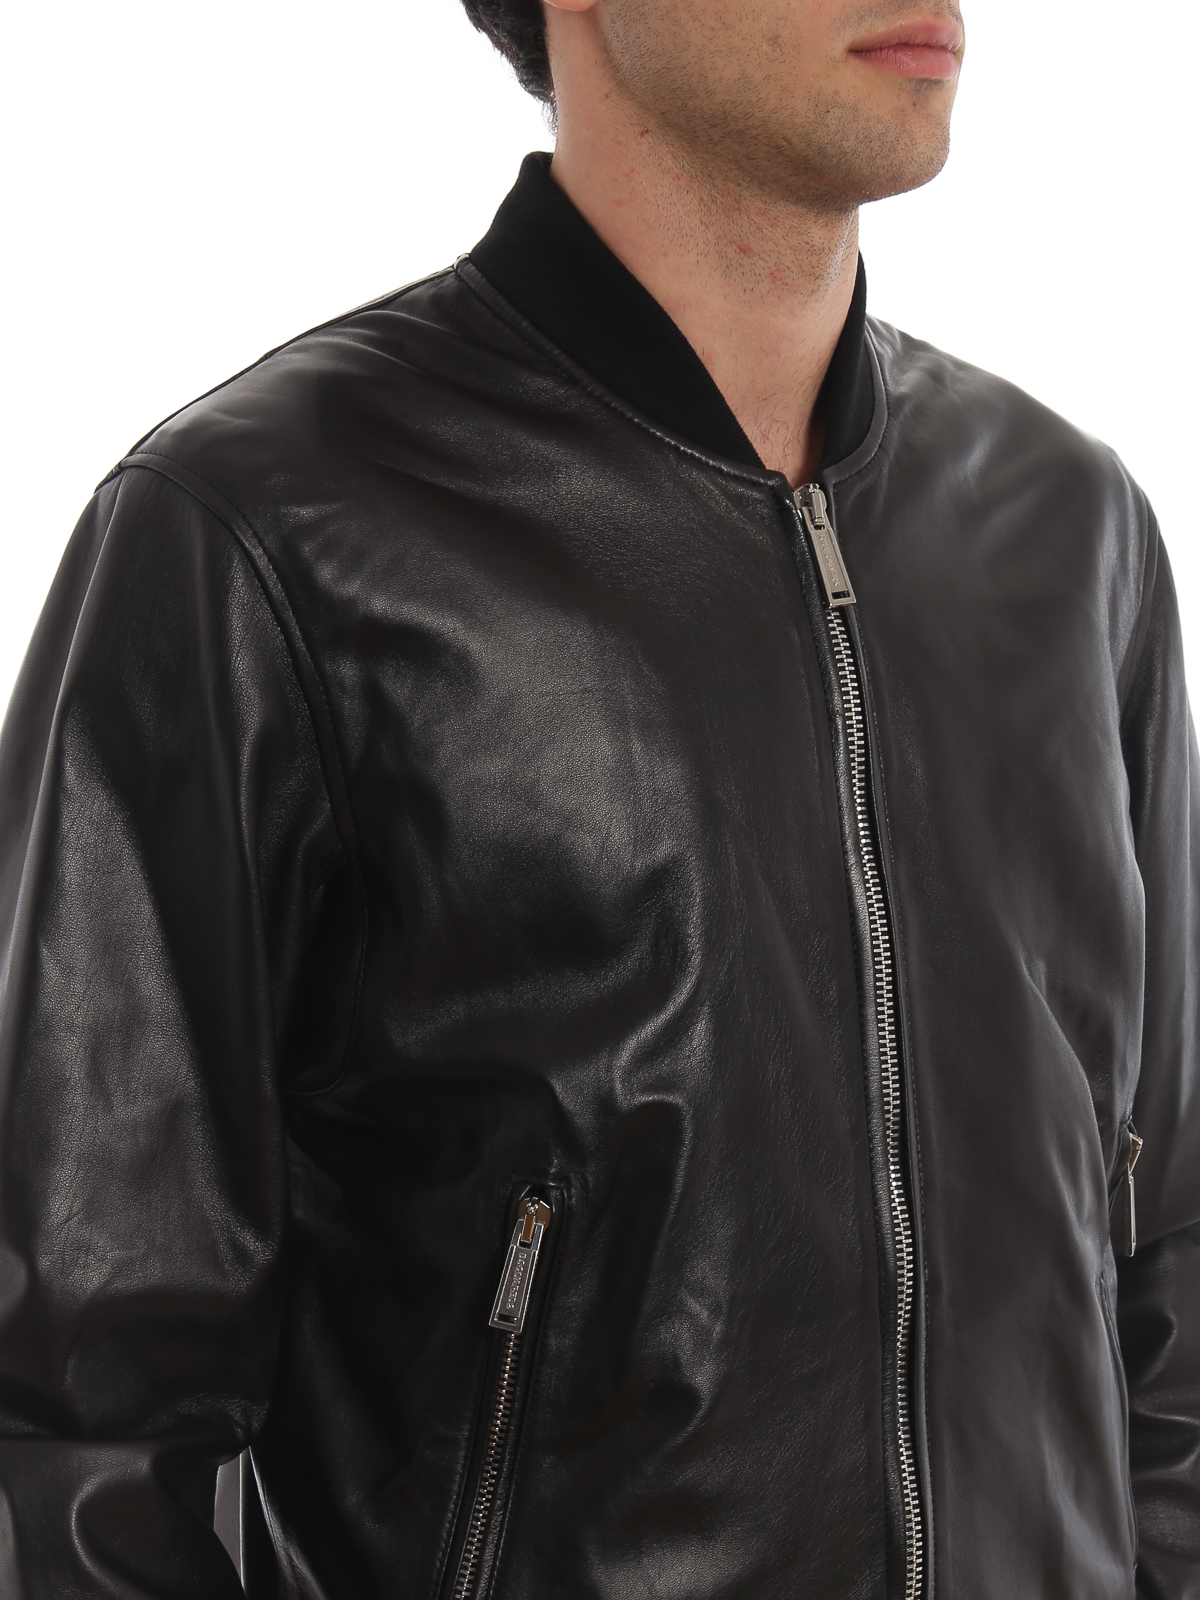 Leather jacket Dsquared2 - Black nappa lamb leather bomber jacket ...